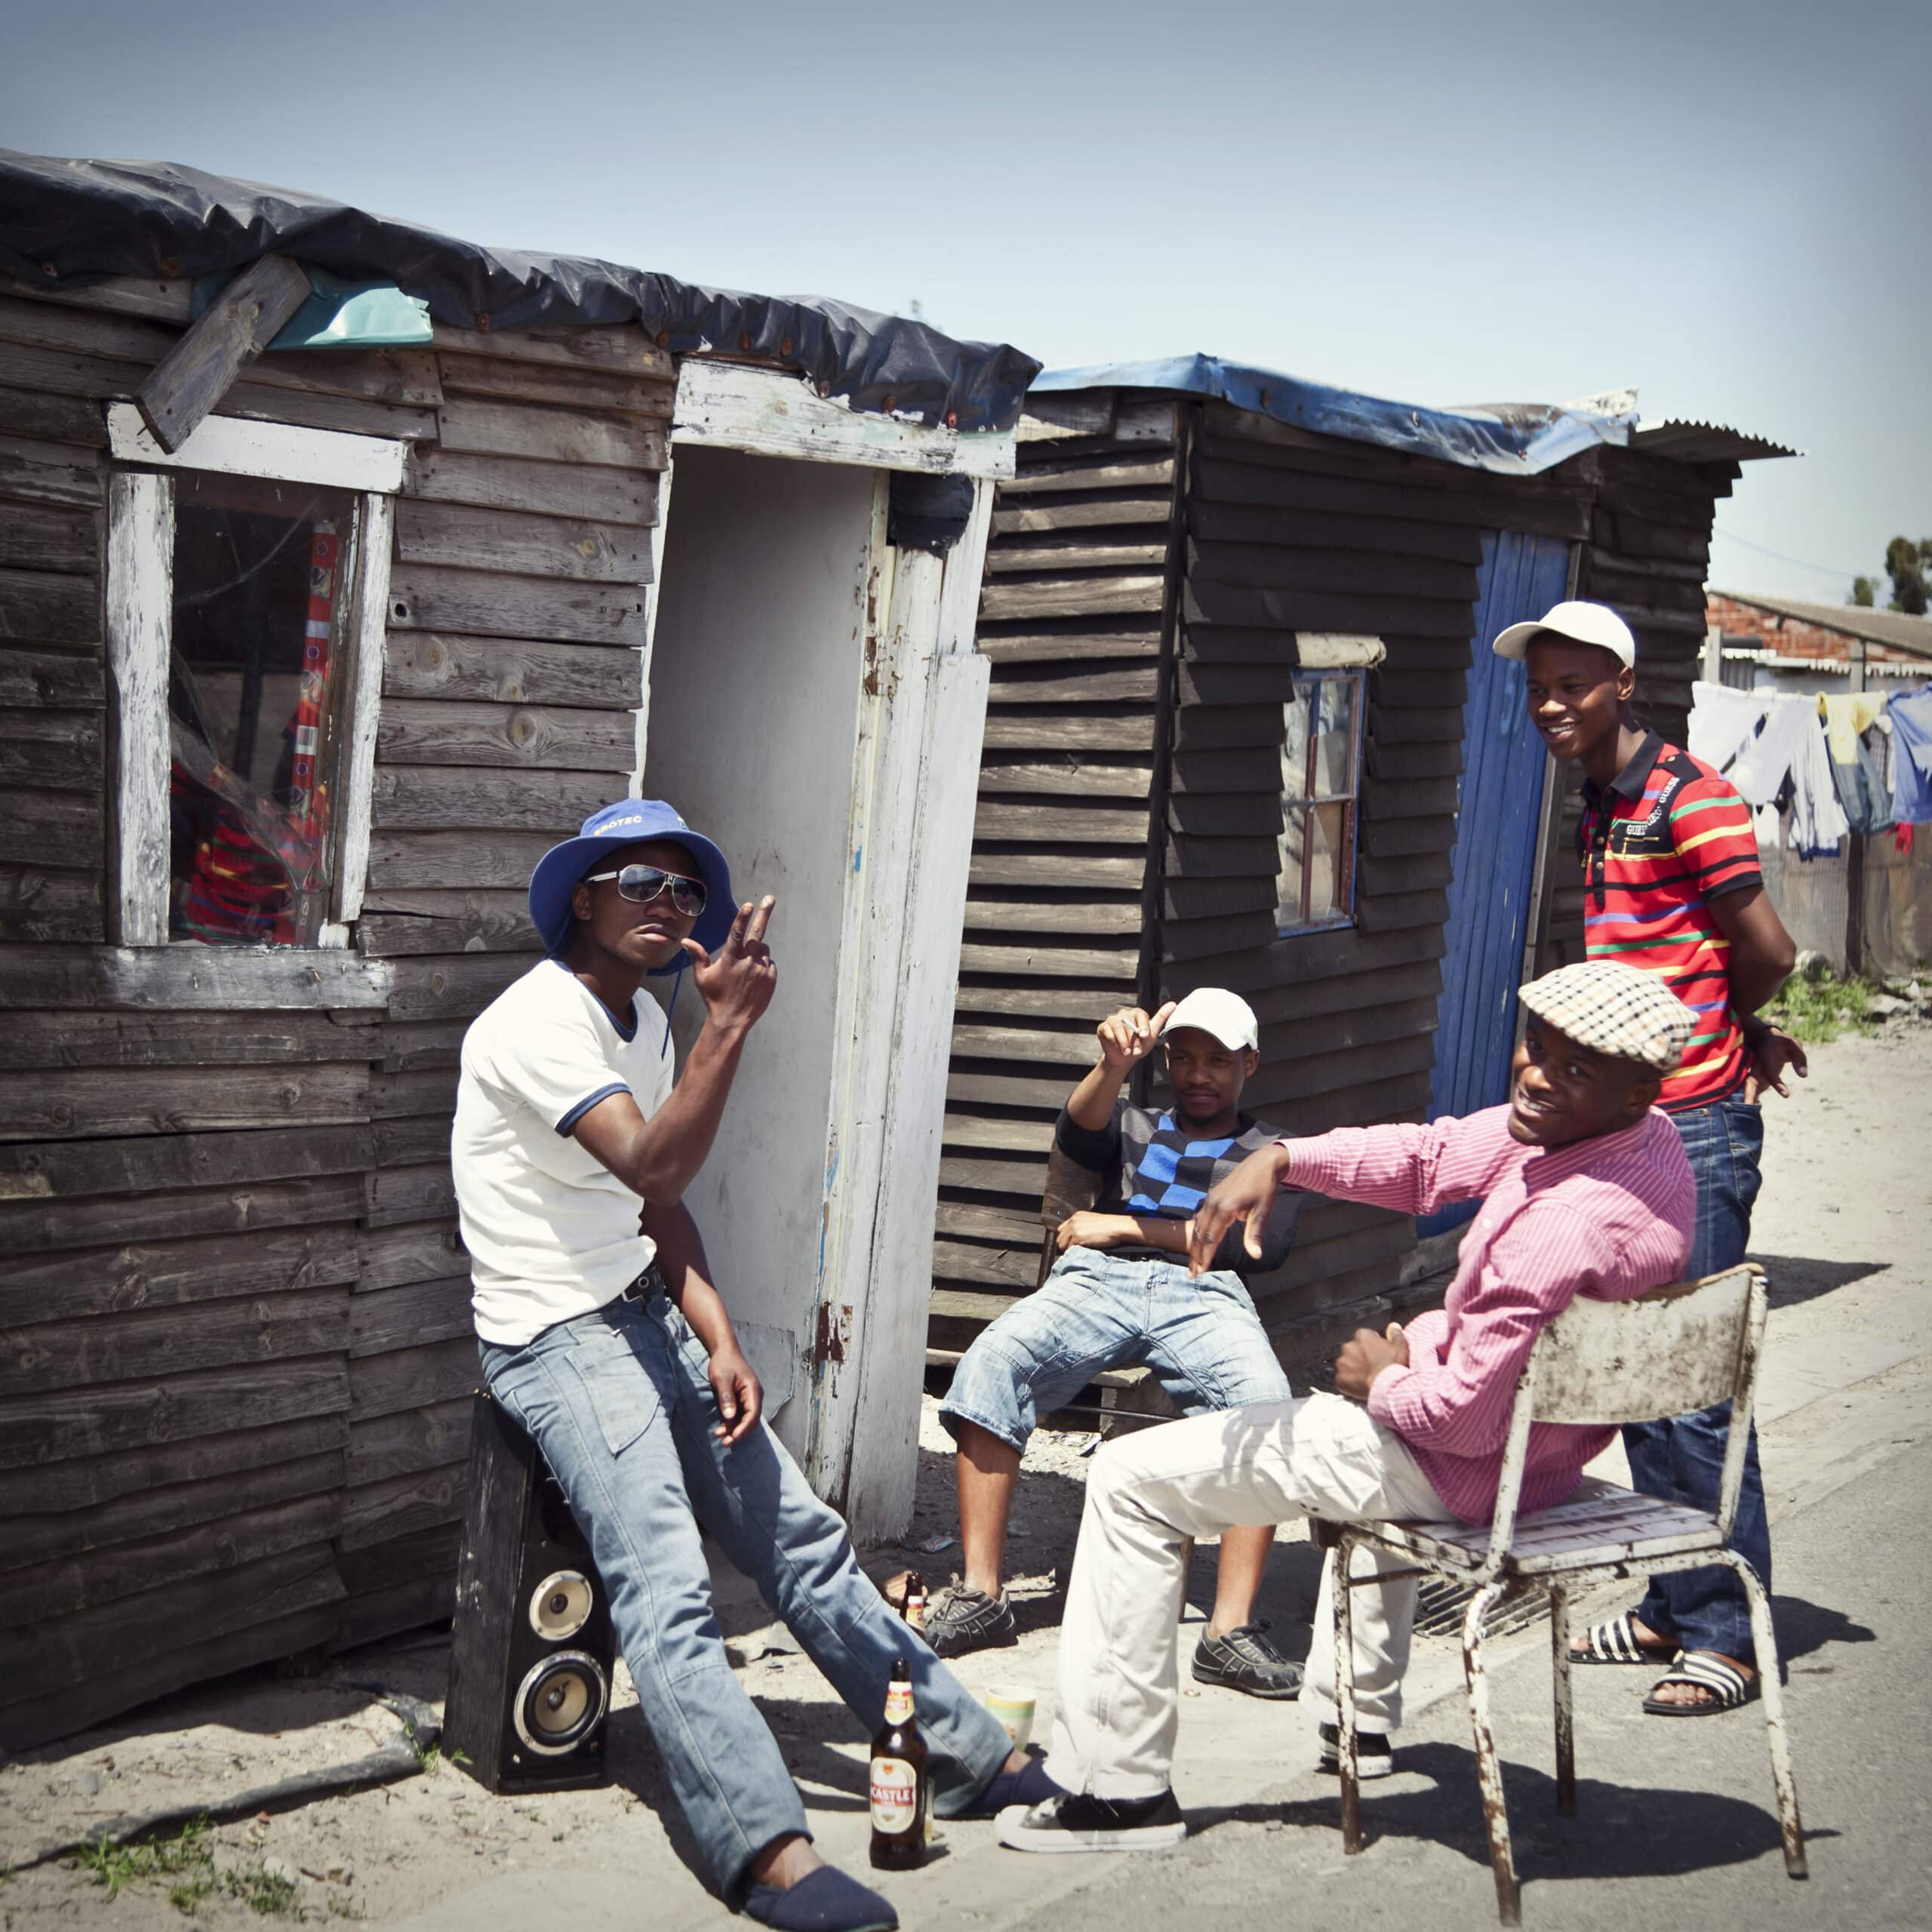 Vier Männer unterhalten sich ungezwungen vor einer provisorischen Holzhütte in sonniger Umgebung. Zwei sitzen auf Stühlen, einer lehnt an der Hütte und der vierte steht und unterhält sich mit der Gruppe. © Fotografie Tomas Rodriguez